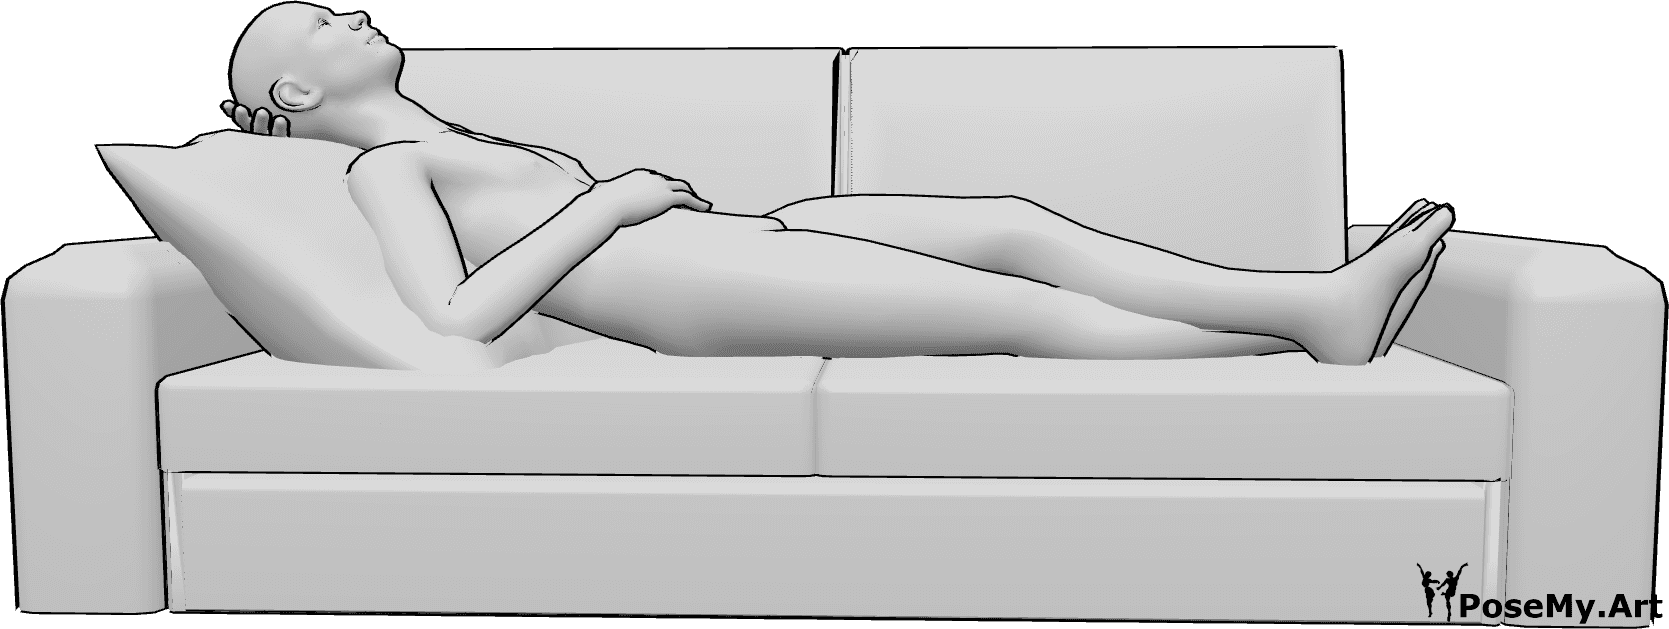 Referência de poses- Homem deitado em pose de repouso - O homem está deitado no sofá e a descansar, com as pernas cruzadas e a olhar para cima